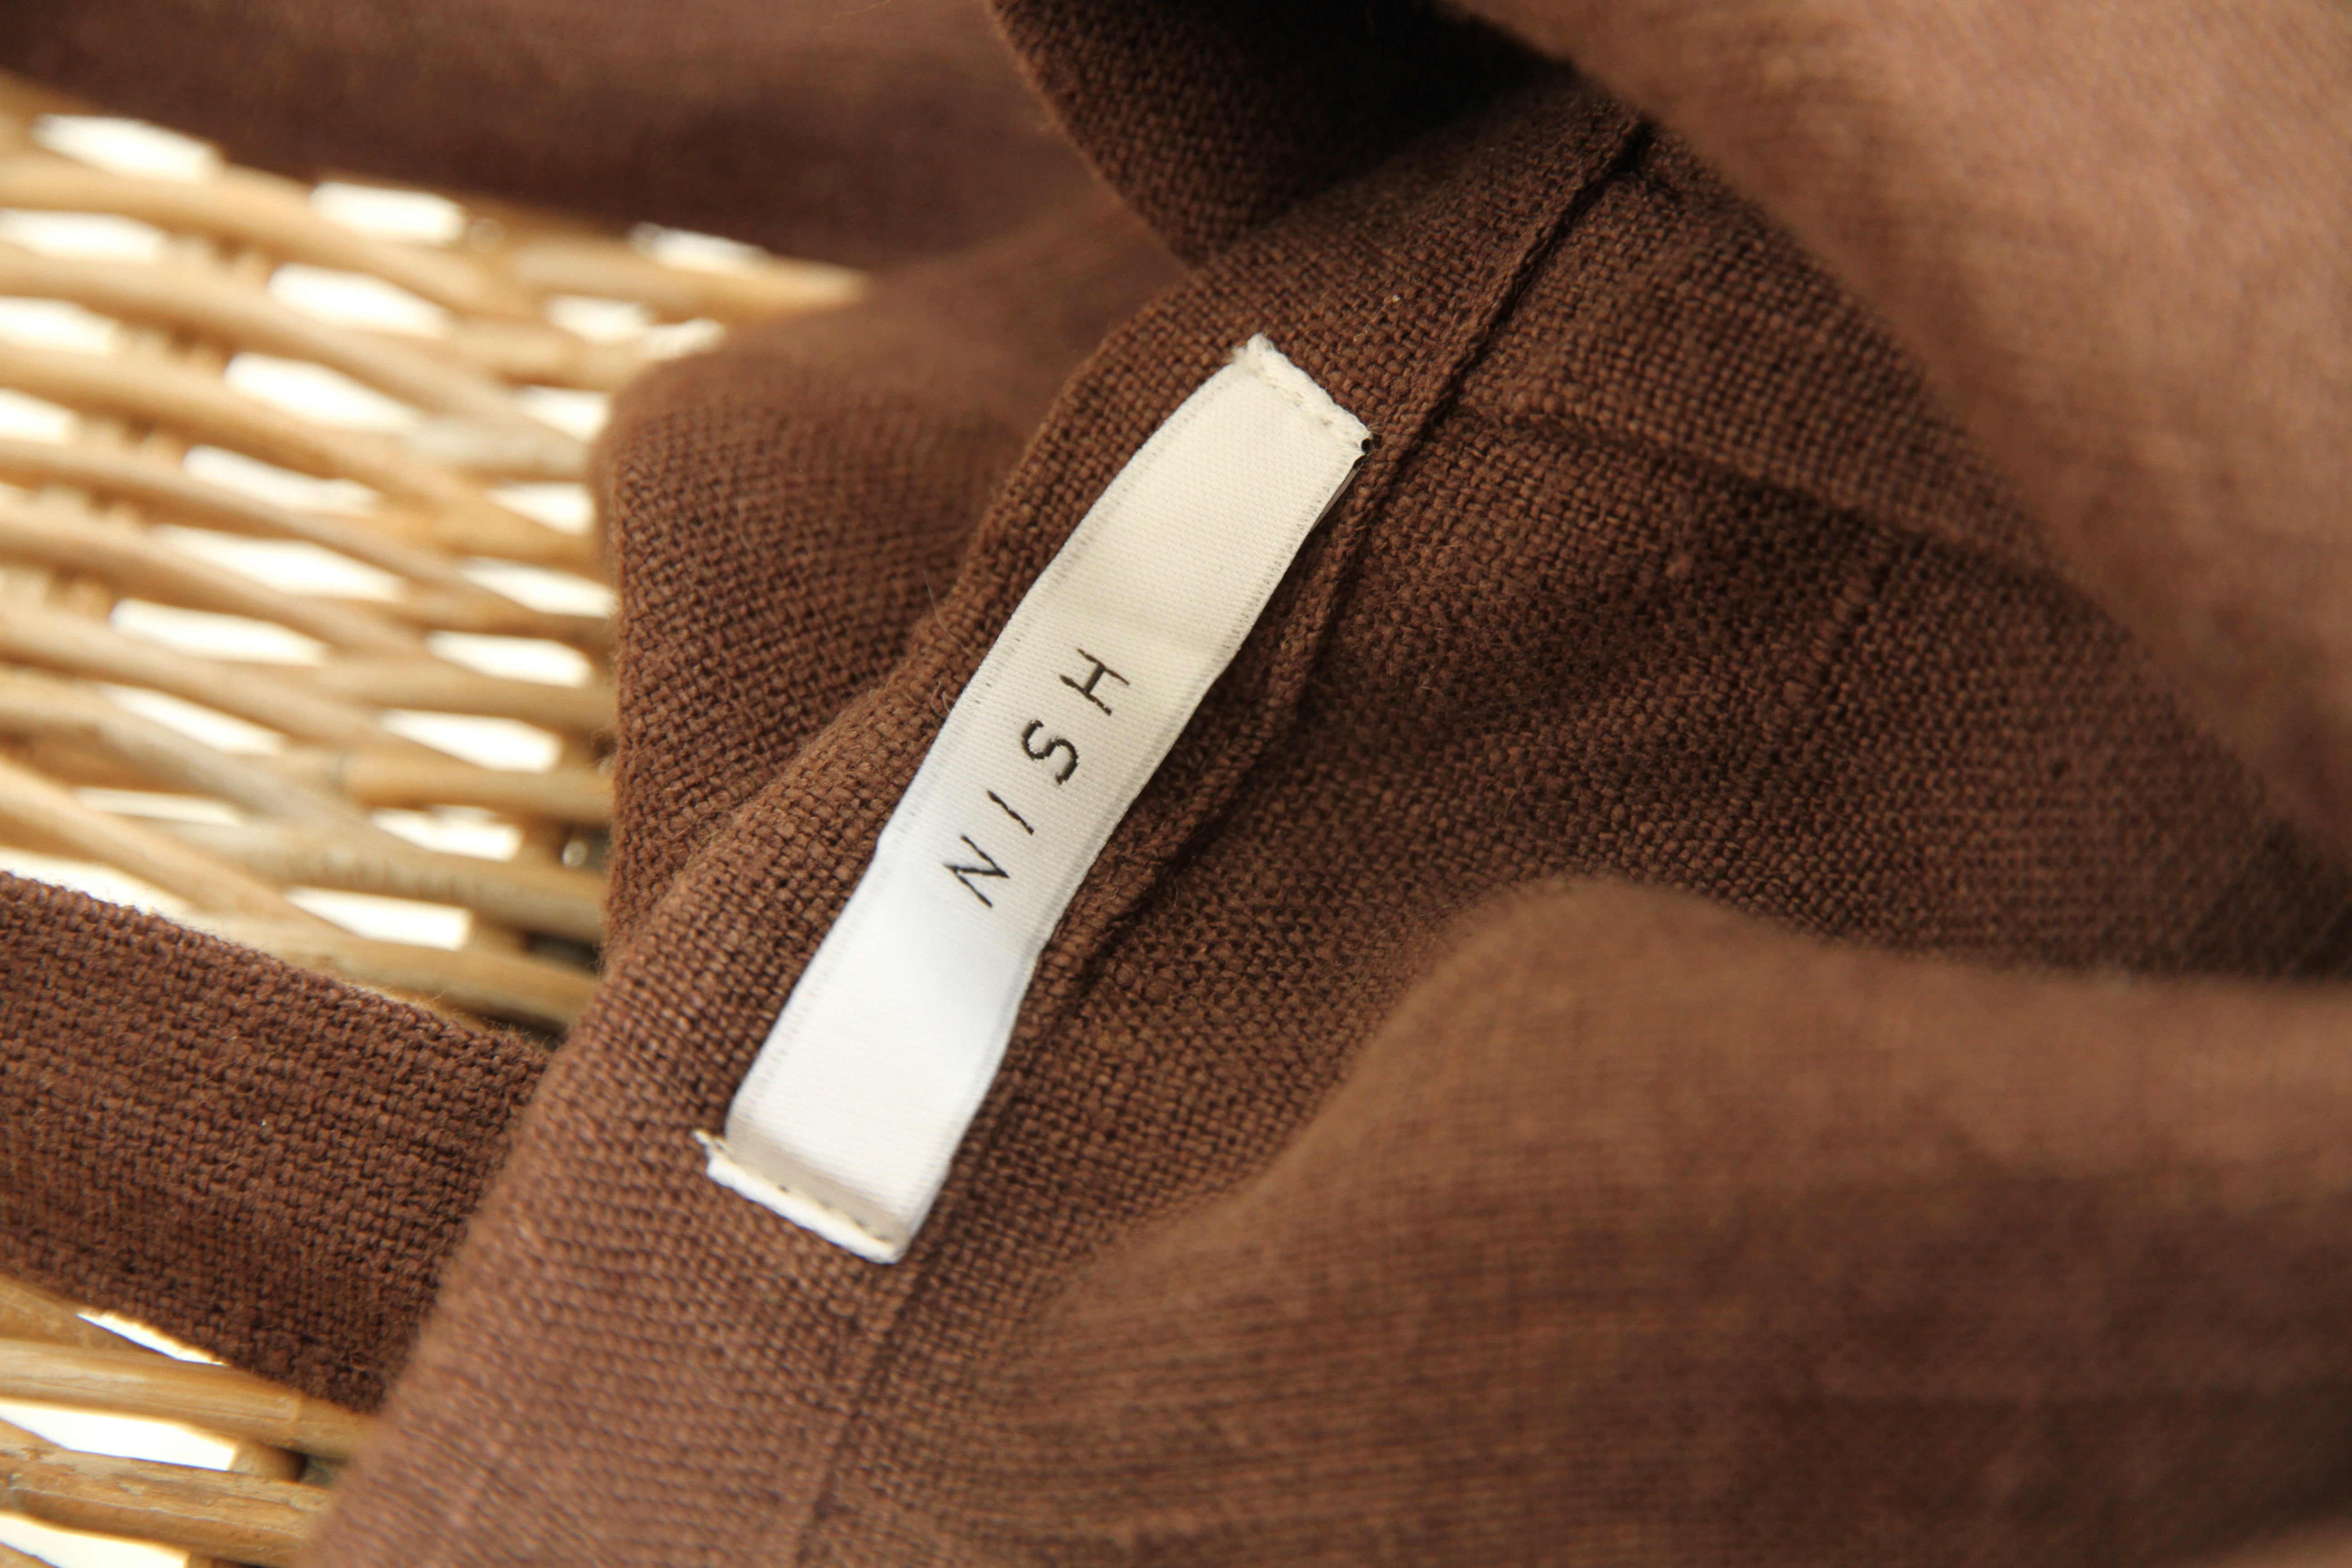 Capsule Skirt | Linen